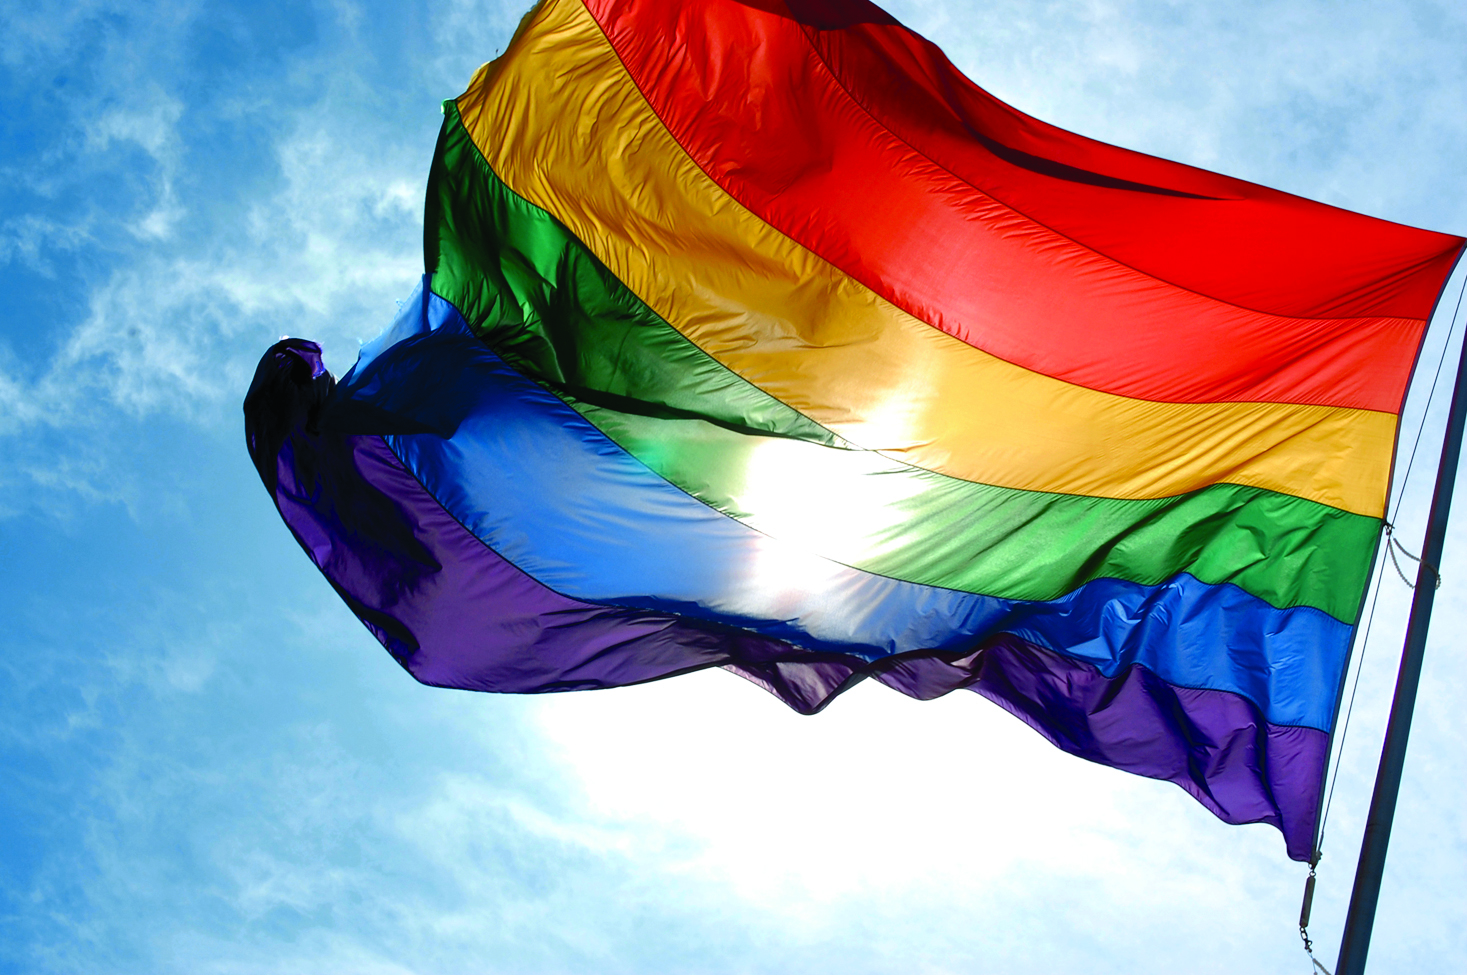 &quot;C&oacute;digo Civil de Quer&eacute;taro debe garantizar los derechos de comunidad LGBT+&quot;